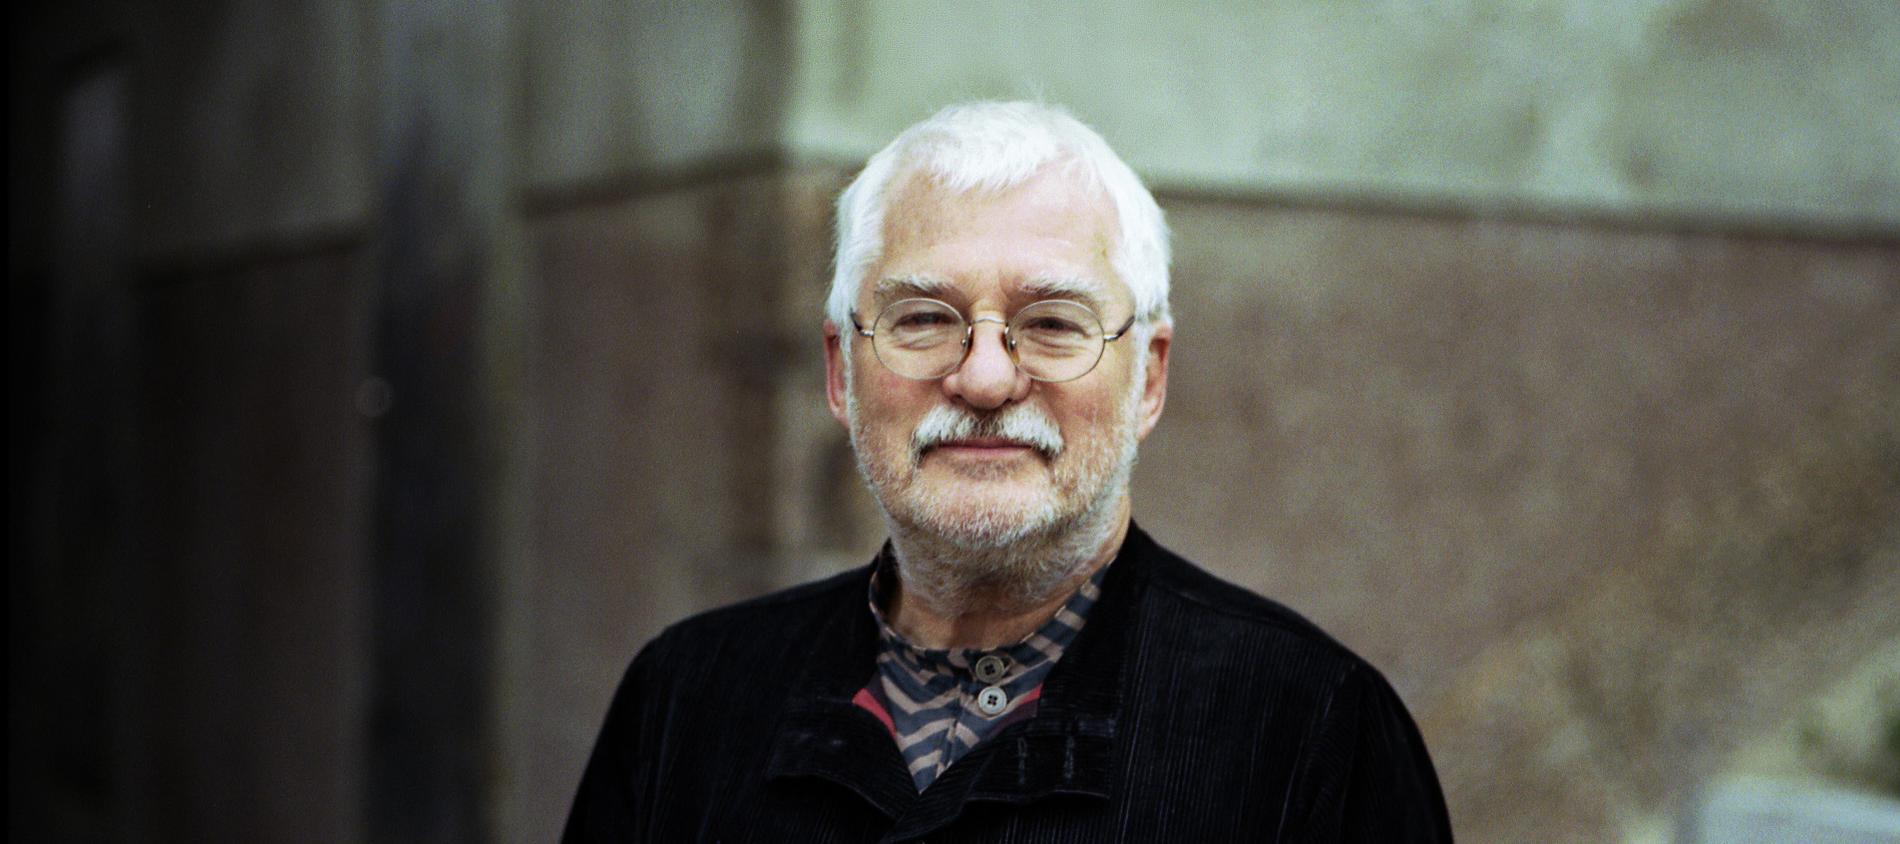 Poeten Björner Torsson har gått bort, 83 år gammal.